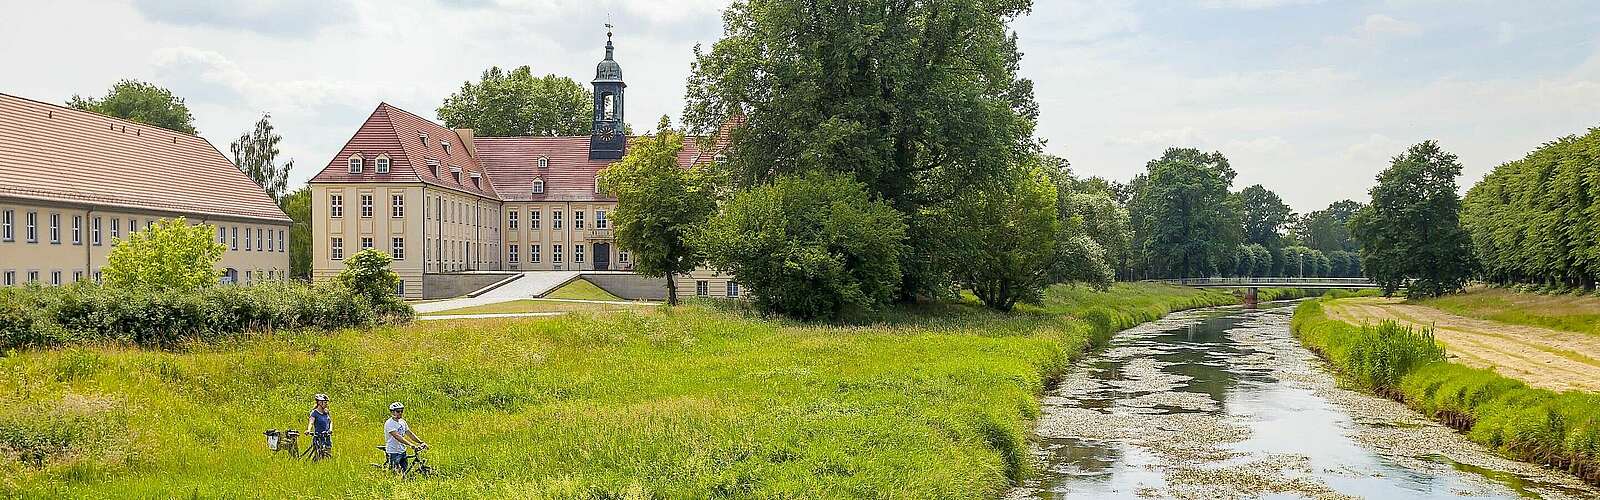 Schloss Elsterwerda mit Grünanlage,
        
    

        Foto: Fotograf / Lizenz - Media Import/Andreas Franke